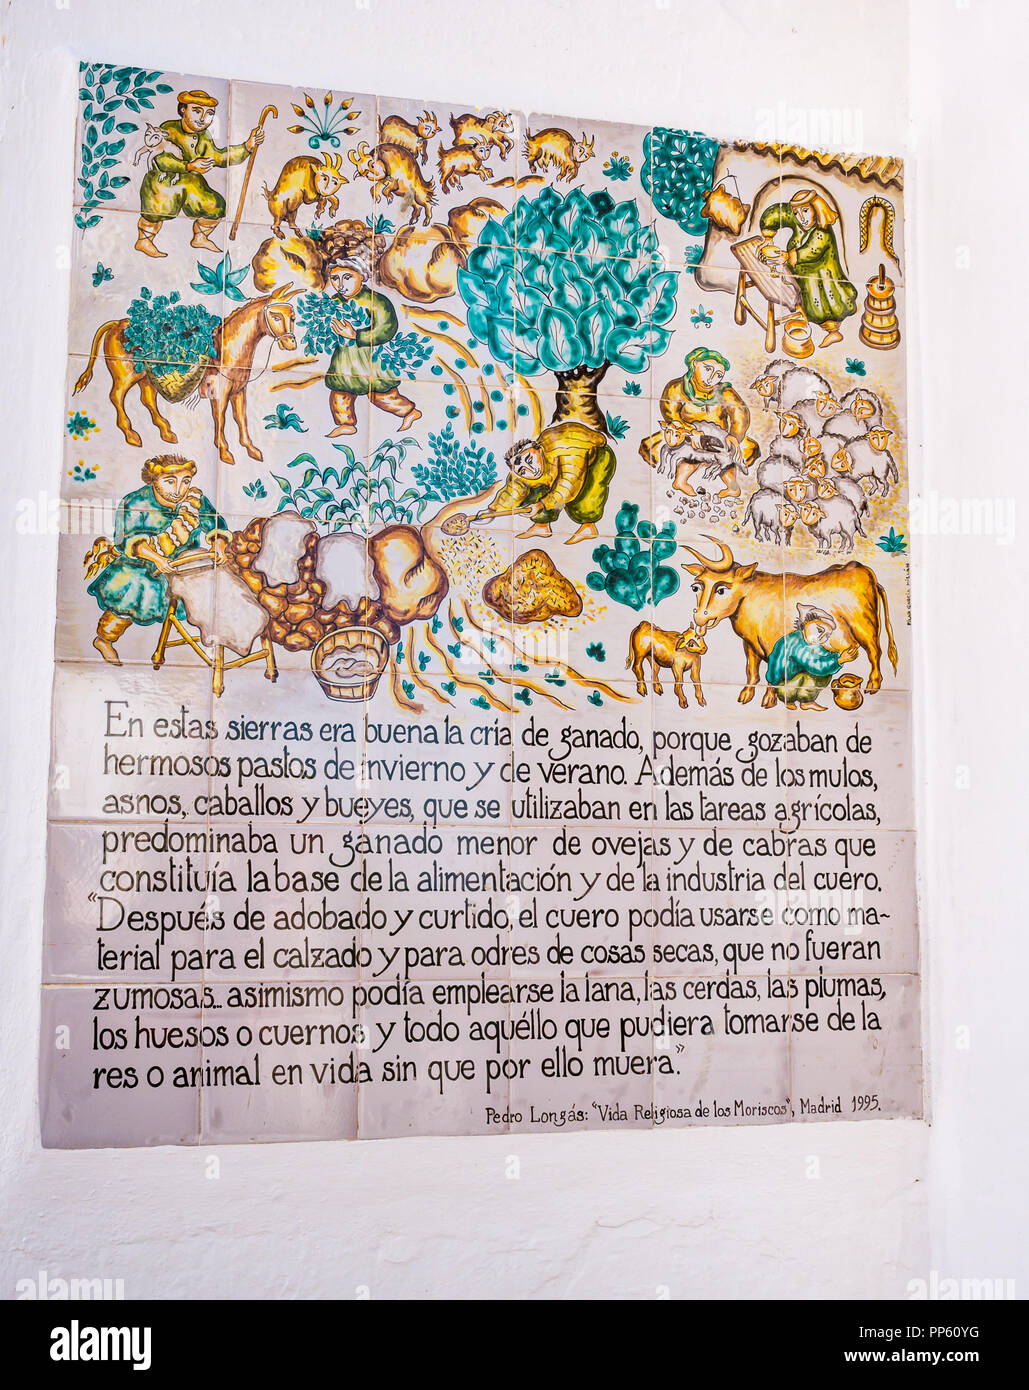 Bunte Keramik Hinweisschild am Eingang der Sedella erklären die lokale Landwirtschaft, Axarquia, Andalusien, Spanien Stockfoto